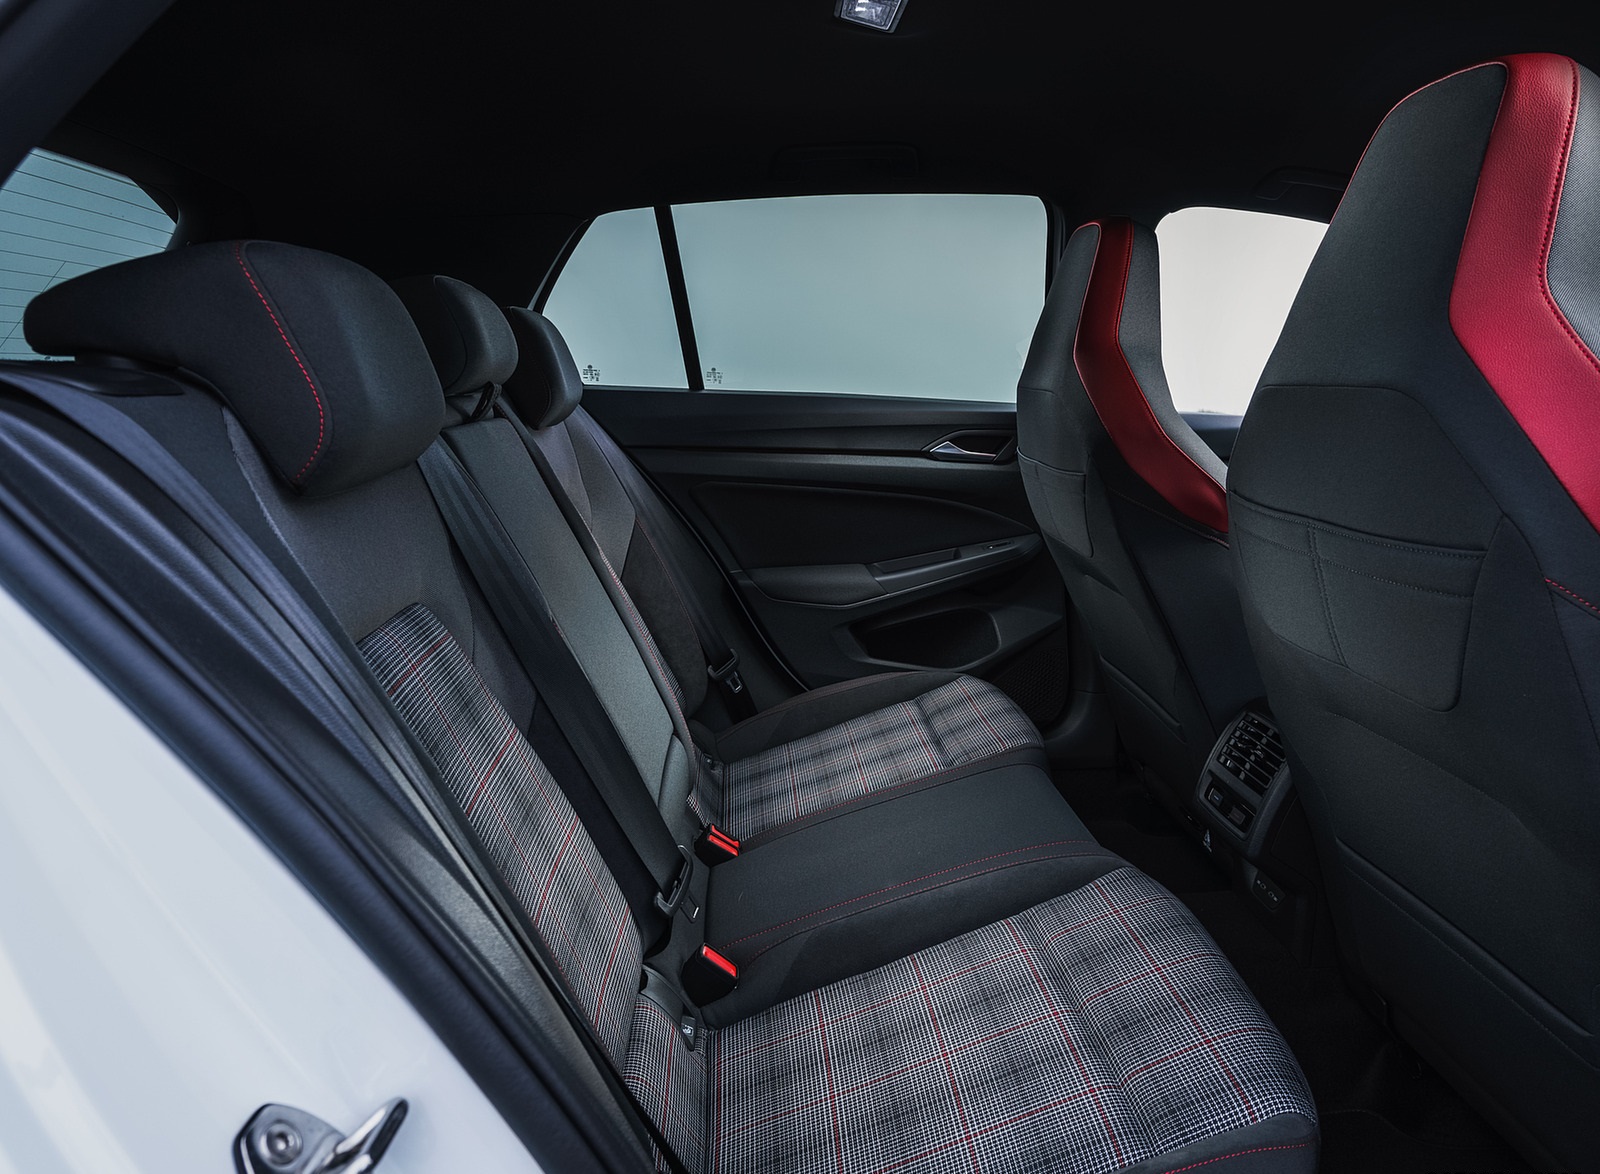 2021 Volkswagen Golf GTI (UK-Spec) Interior Rear Seats Wallpapers #91 of 95